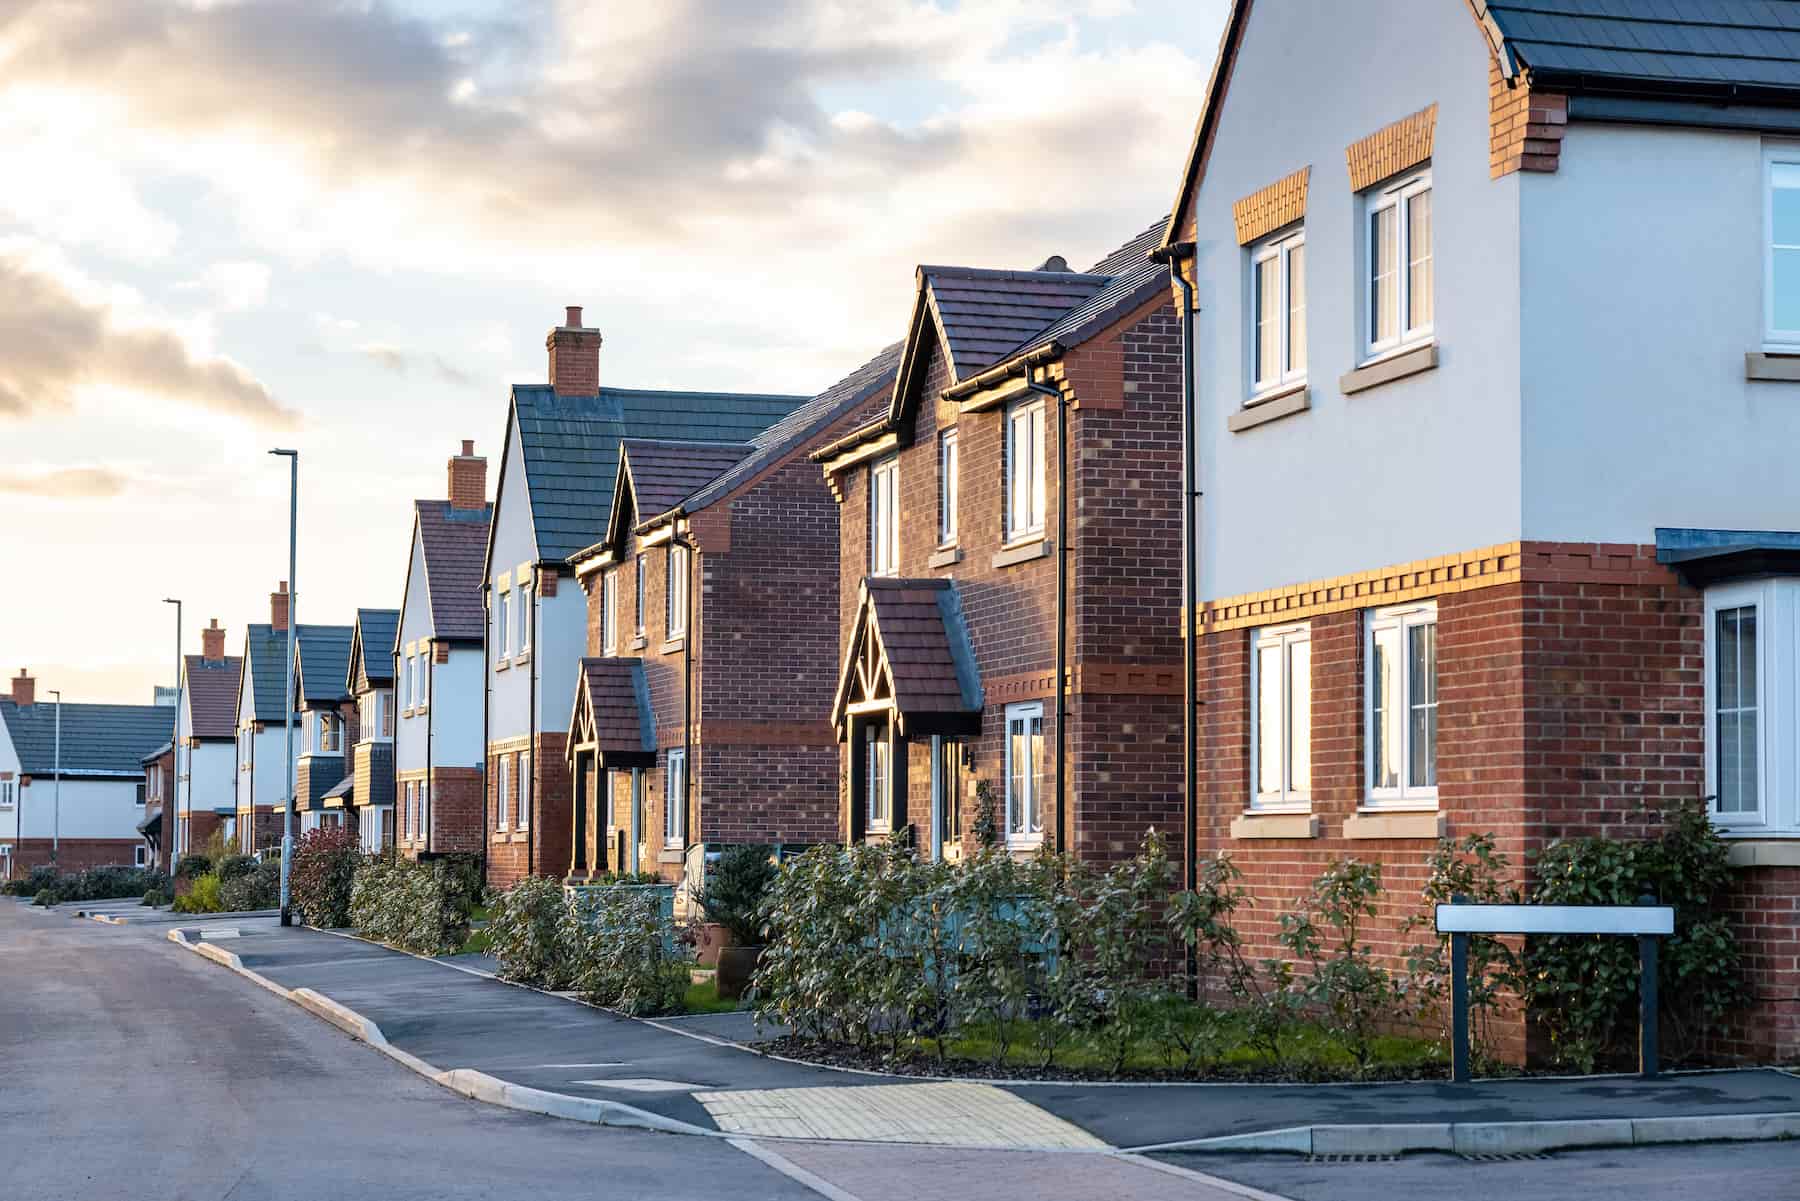 Propertyable's UK home buying community